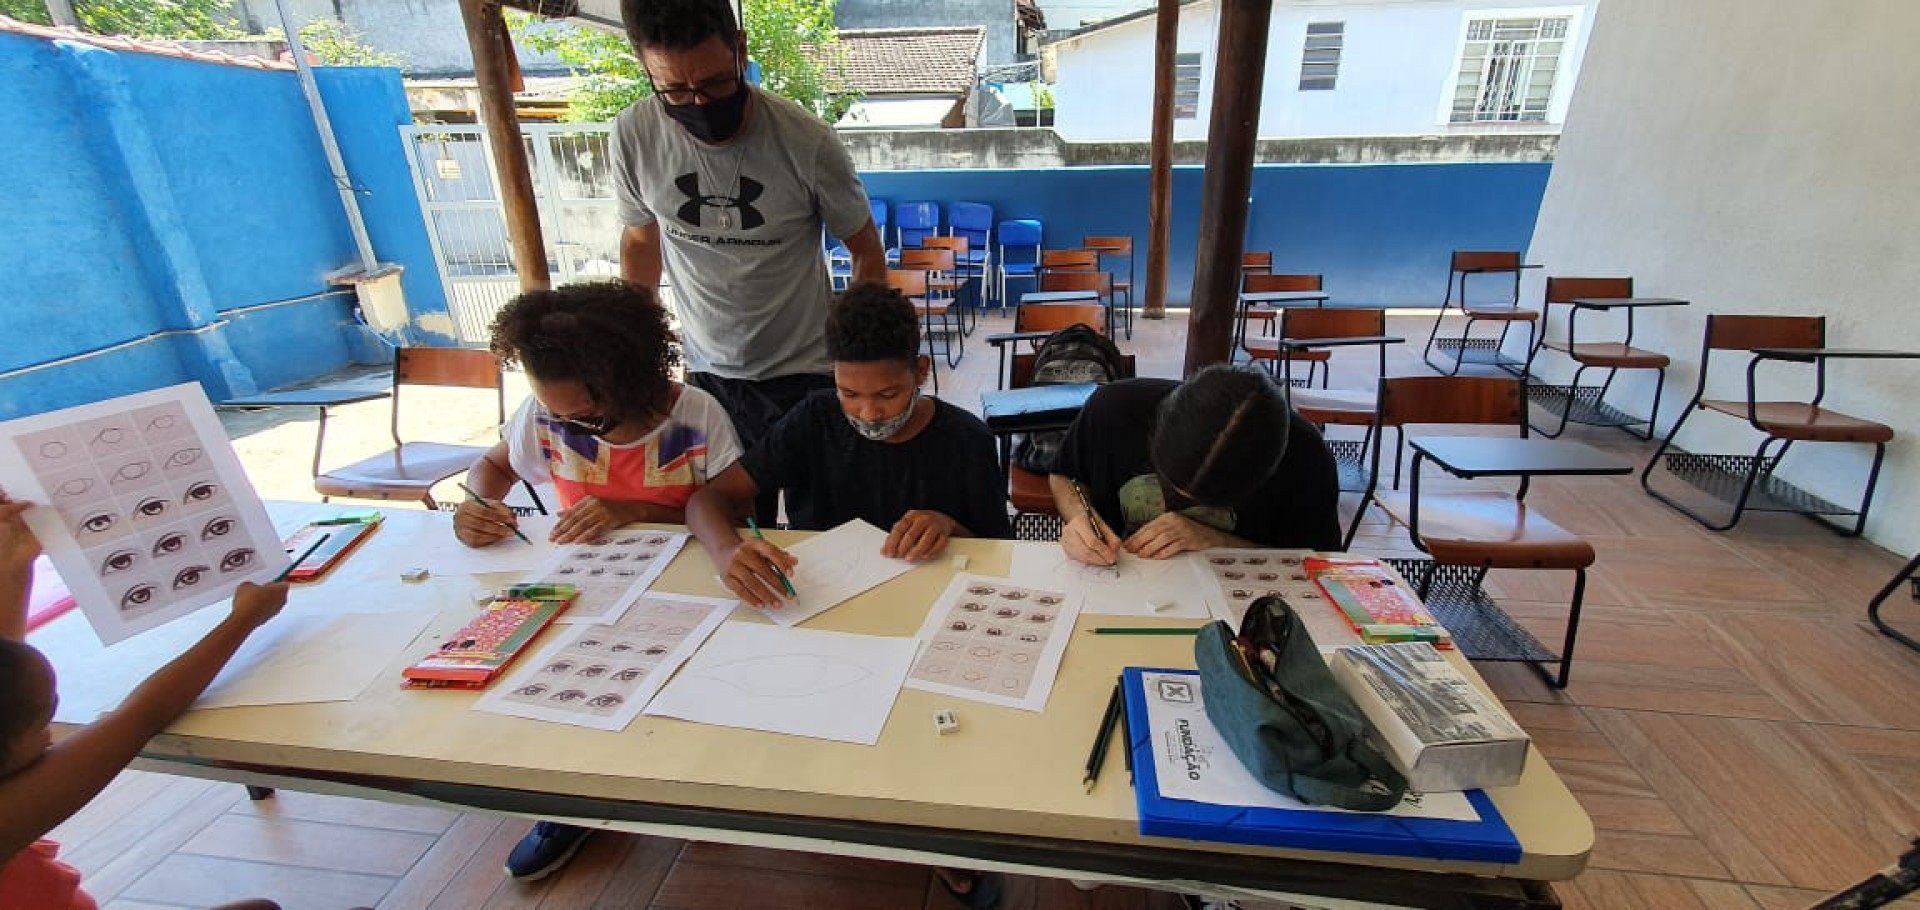 Oficinas acontecem na Casa Mageense de Cultur de segunda a sexta-feira. 150 alunos já estão matriculados nos cursos. - Divulgação/Lucas Santos.